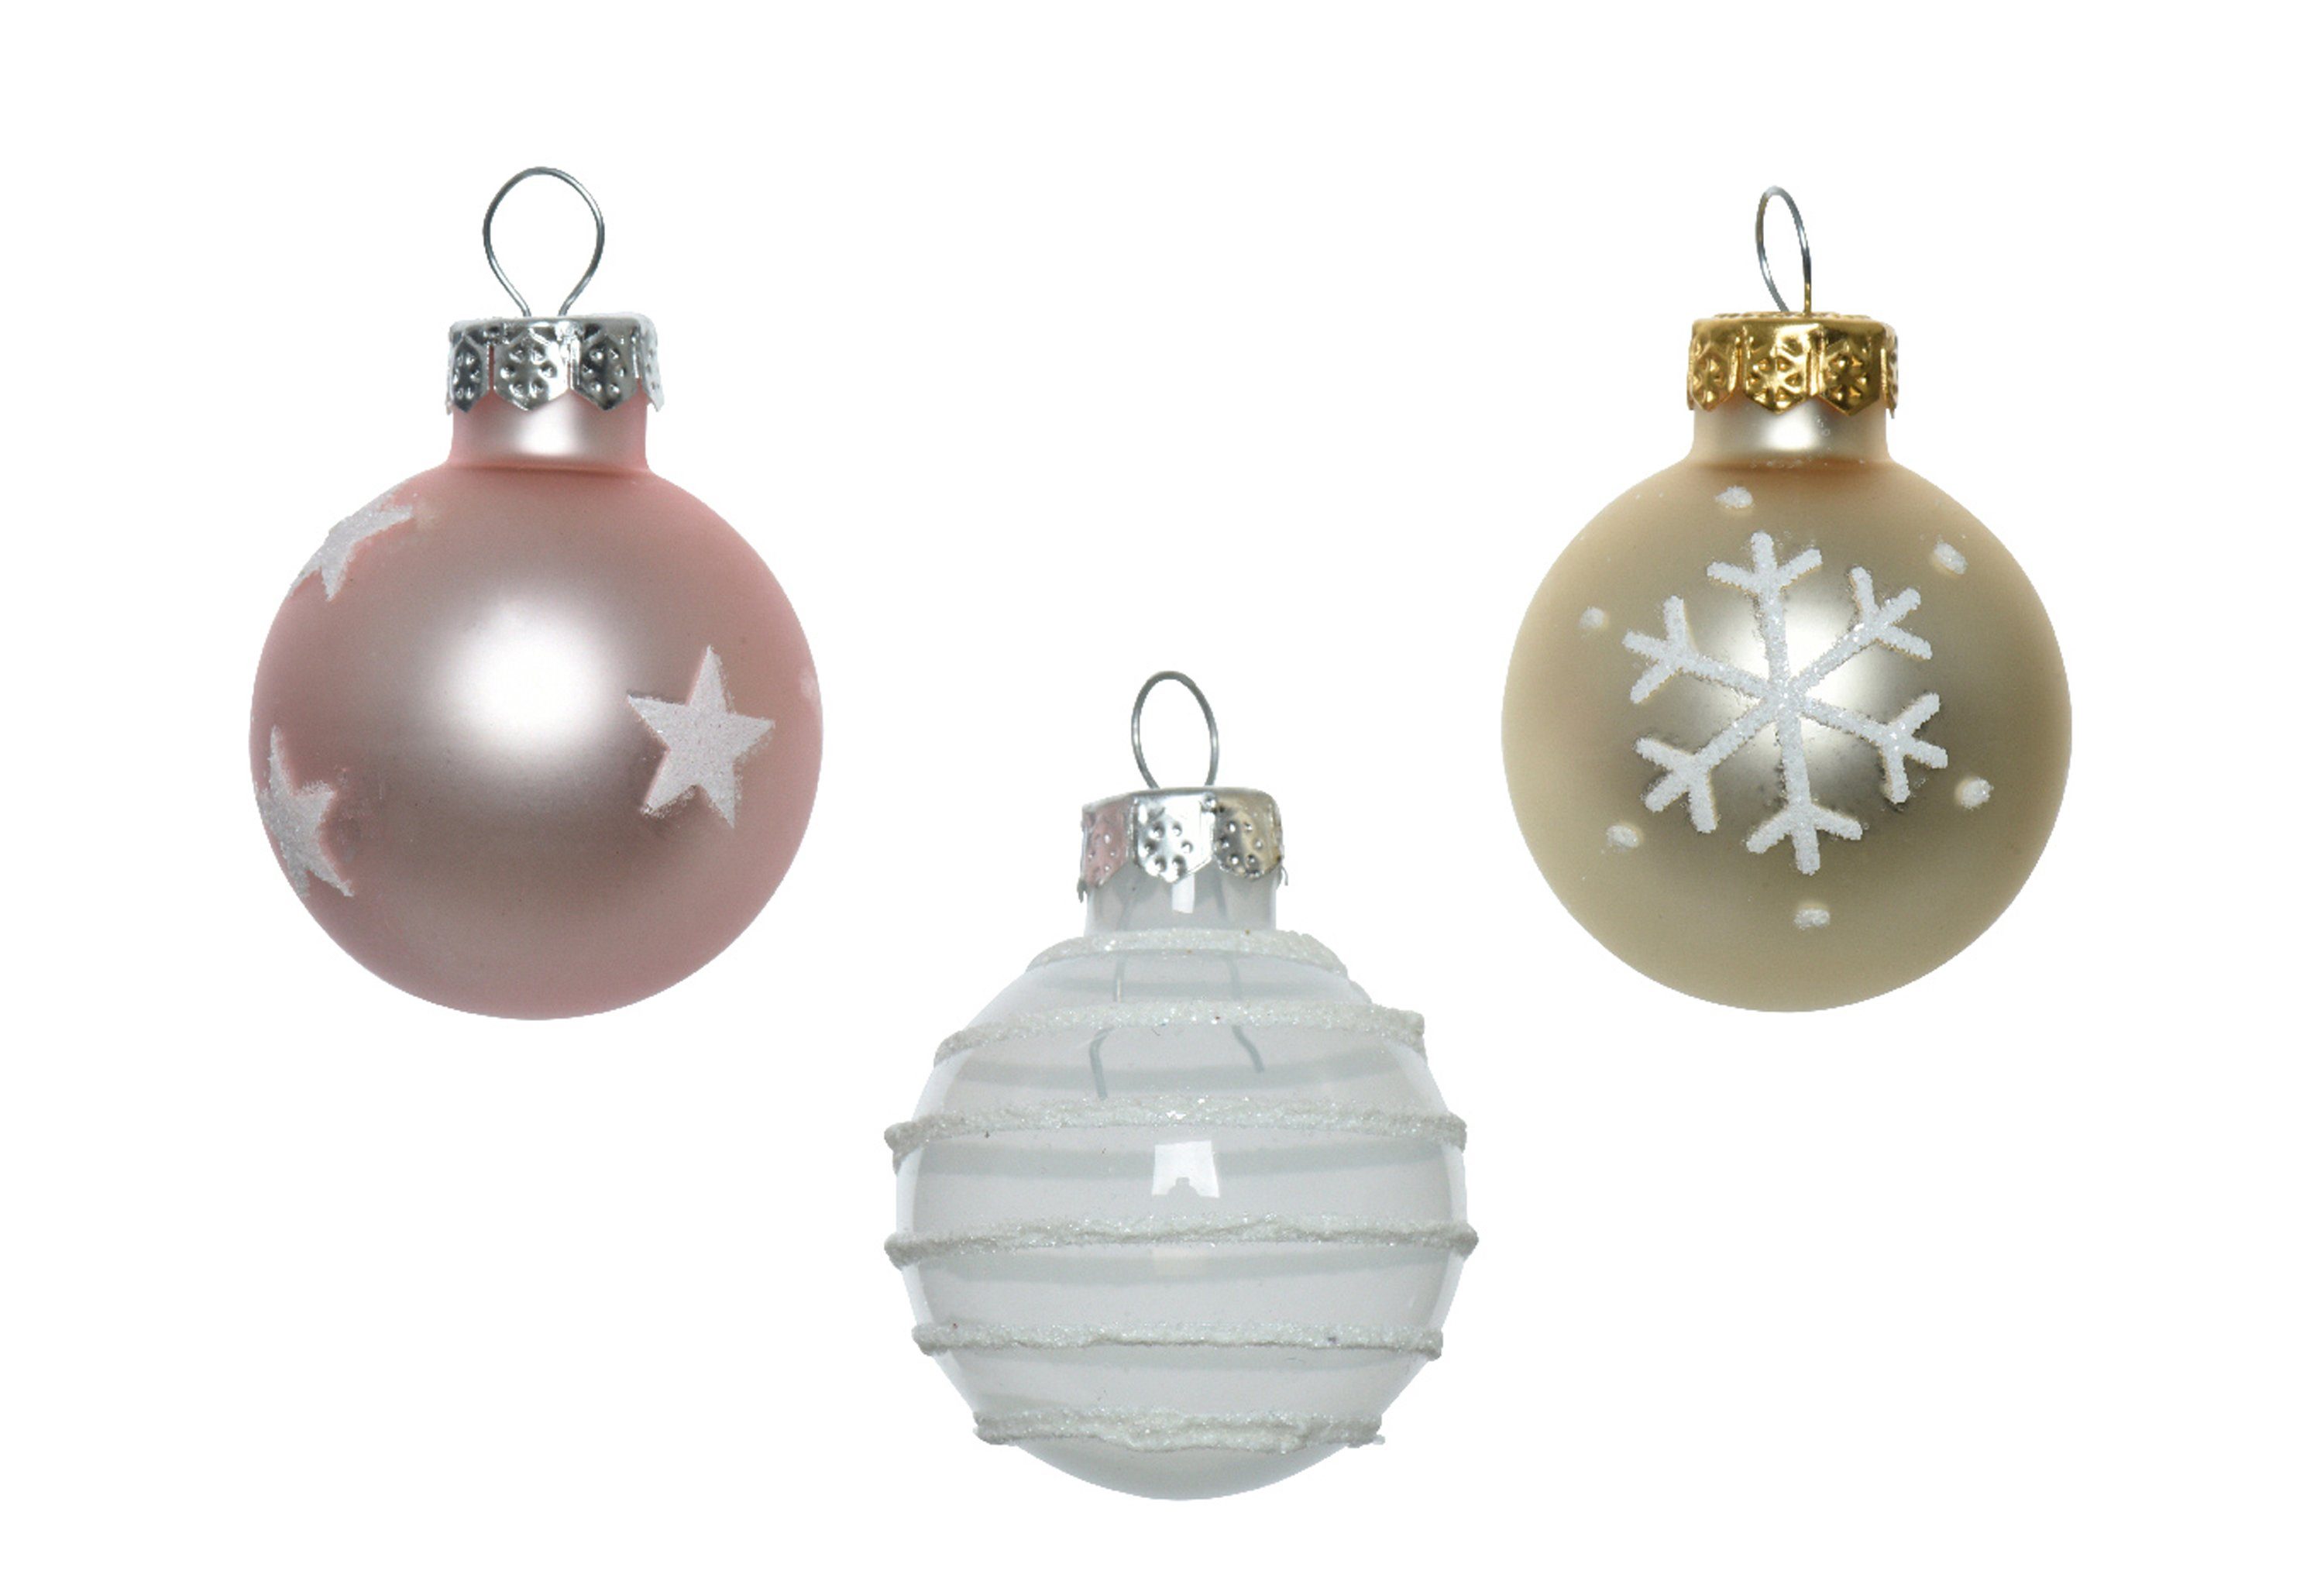 Decoris season decorations Weihnachtsbaumkugel, Weihnachtskugeln Glas mit Motiven 3cm rosa Mix, 9er Set | Weihnachtskugeln